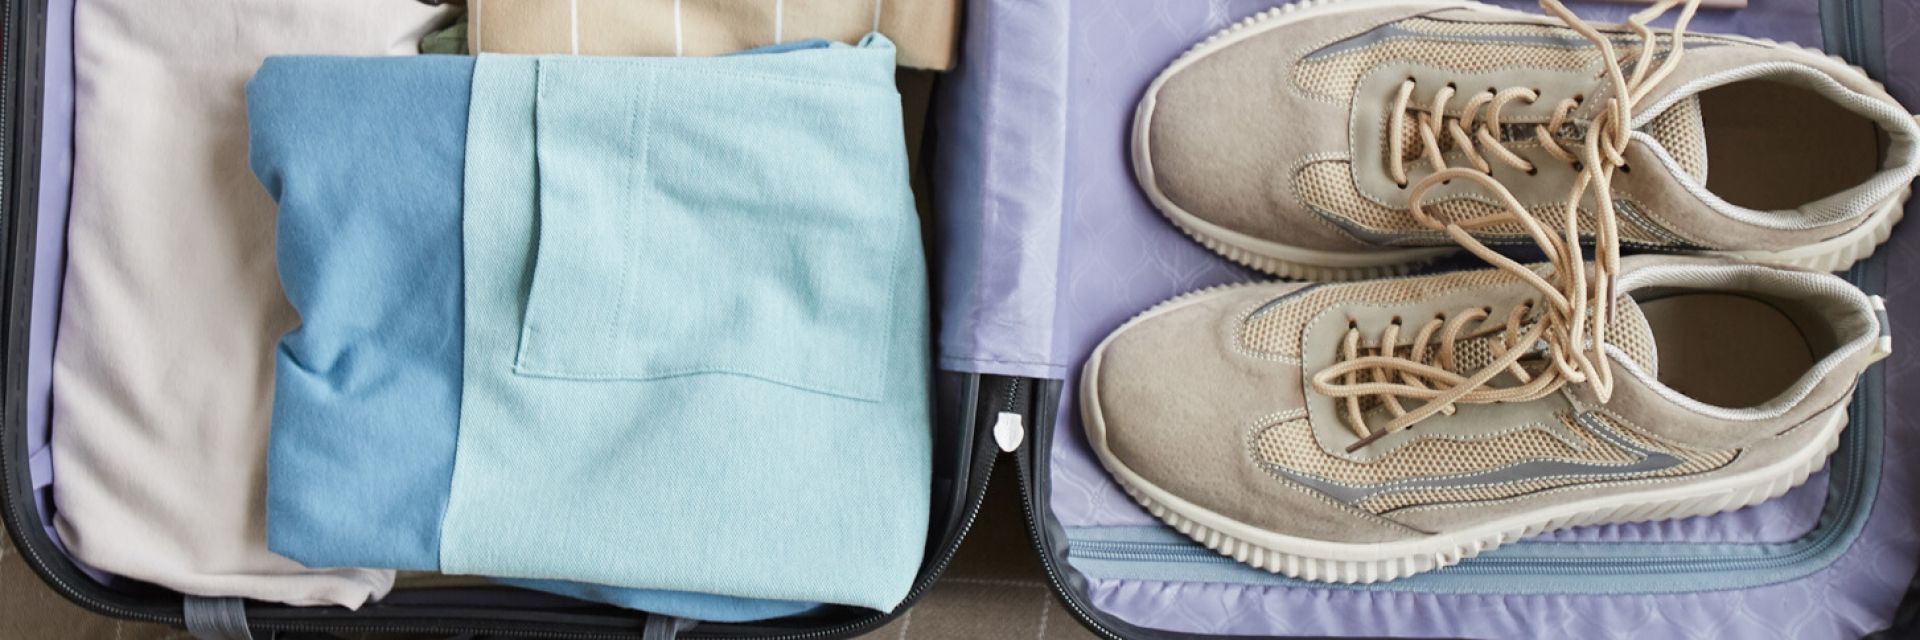 Saiba como dobrar roupas para economizar espaço na mala